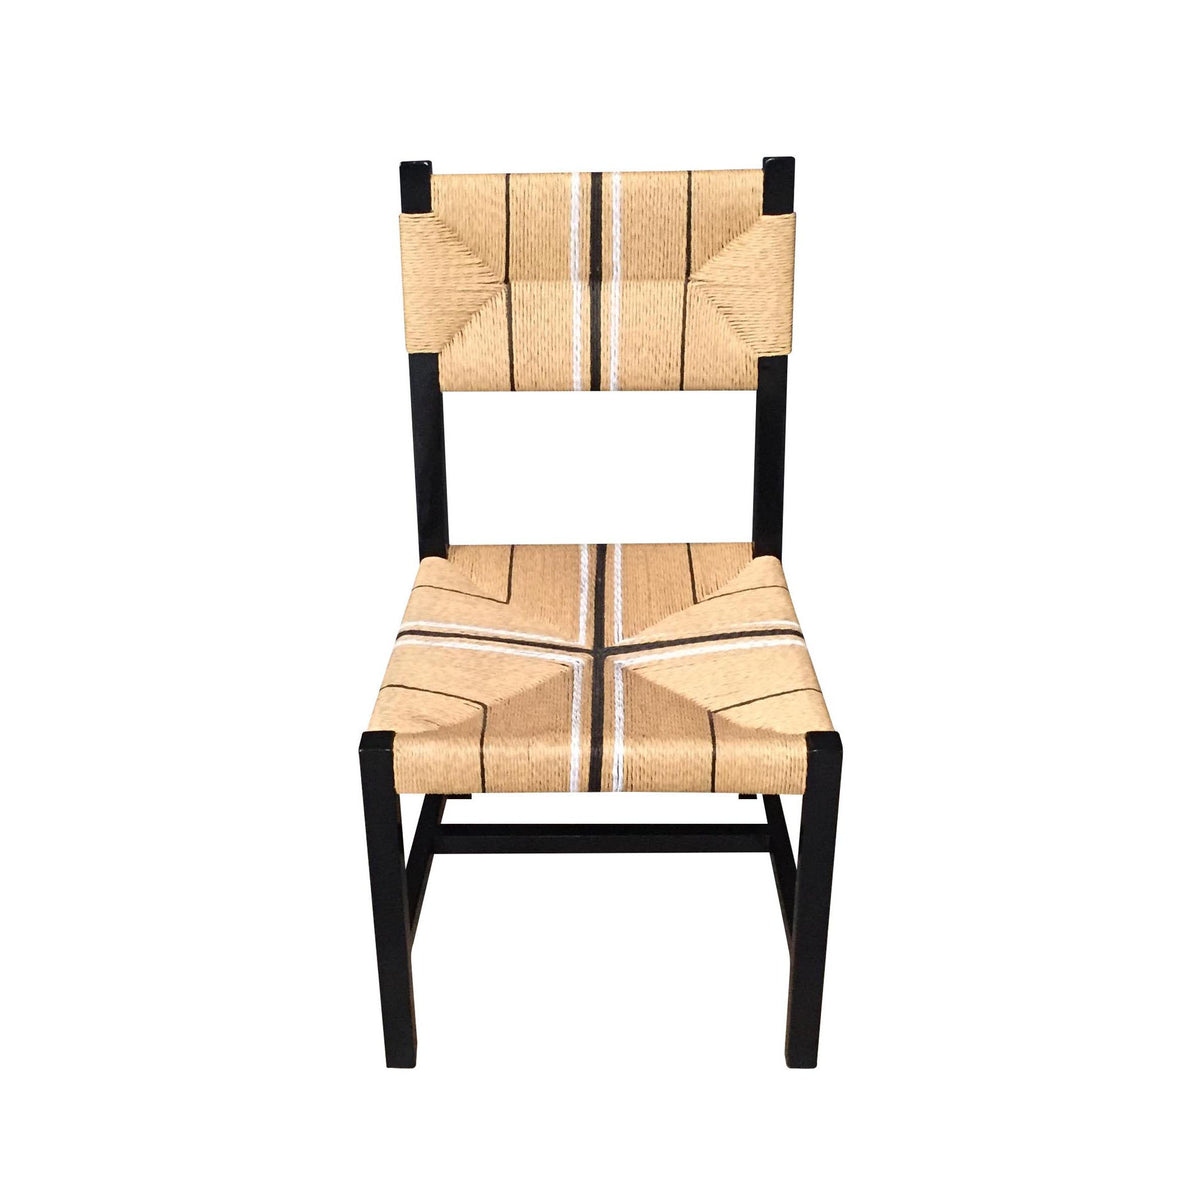 Samaira Solid Teak Woven Dining Chair – Black - Notbrand